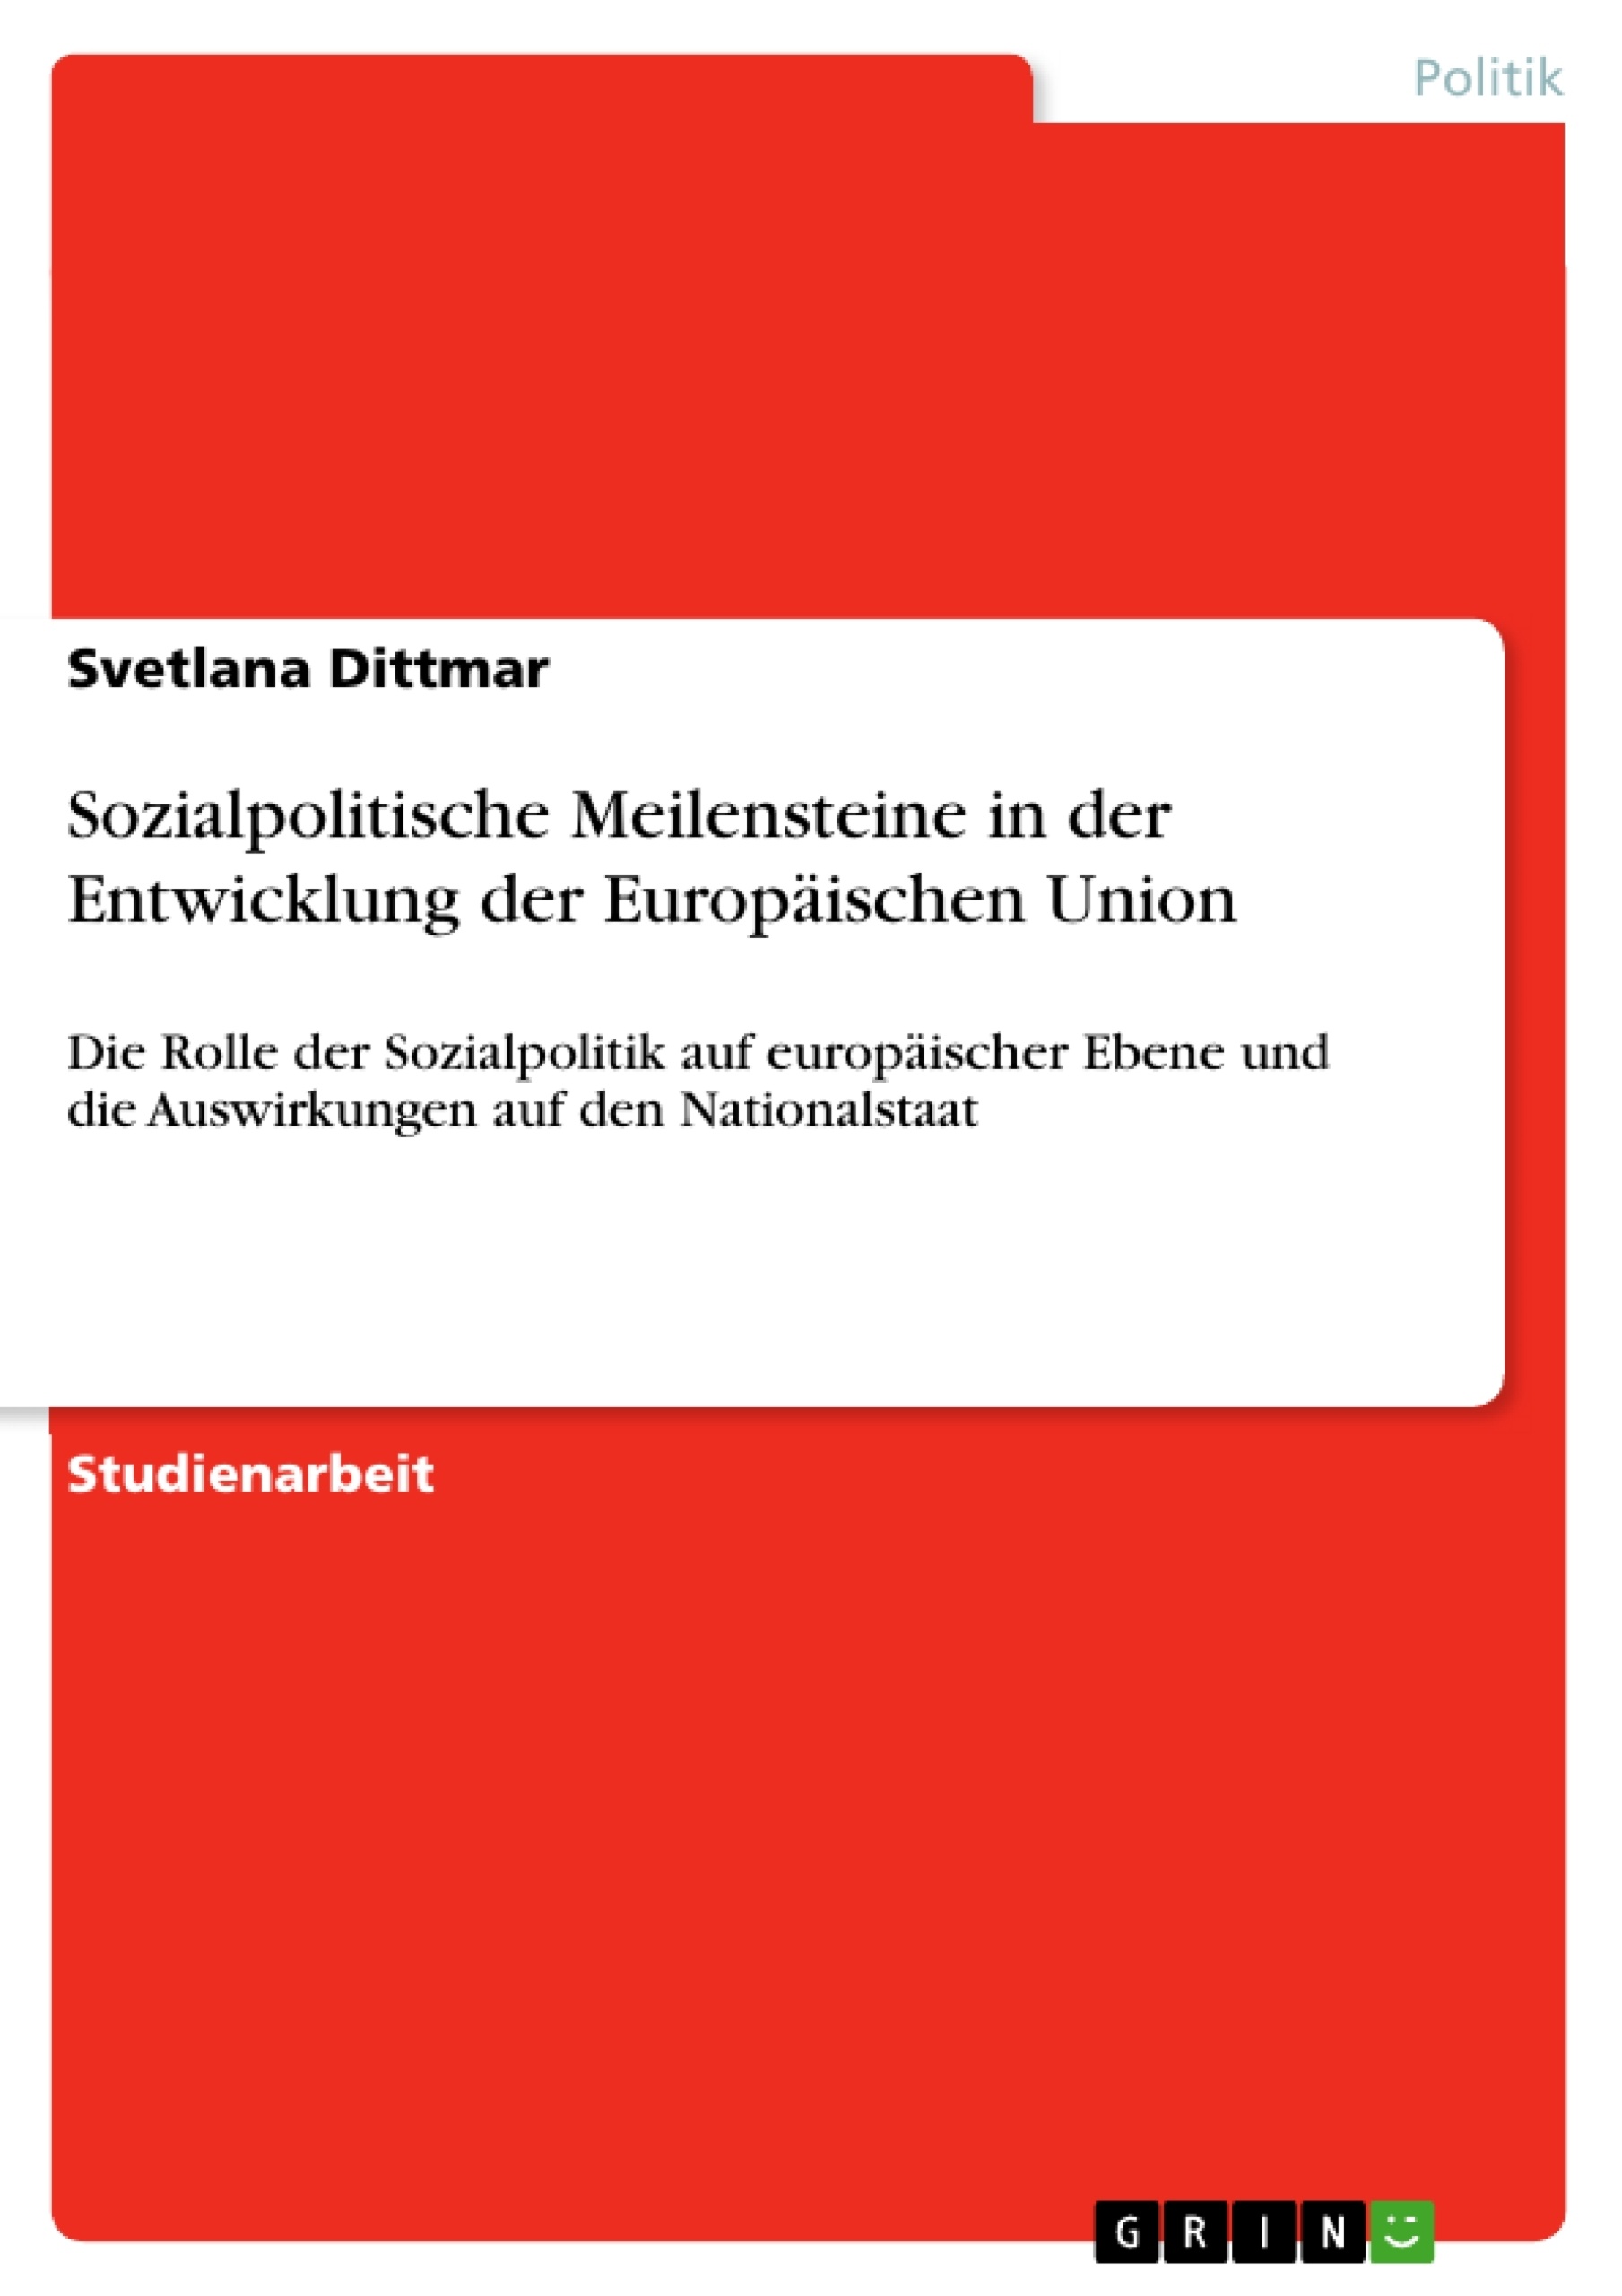 Título: Sozialpolitische Meilensteine in der Entwicklung der Europäischen Union